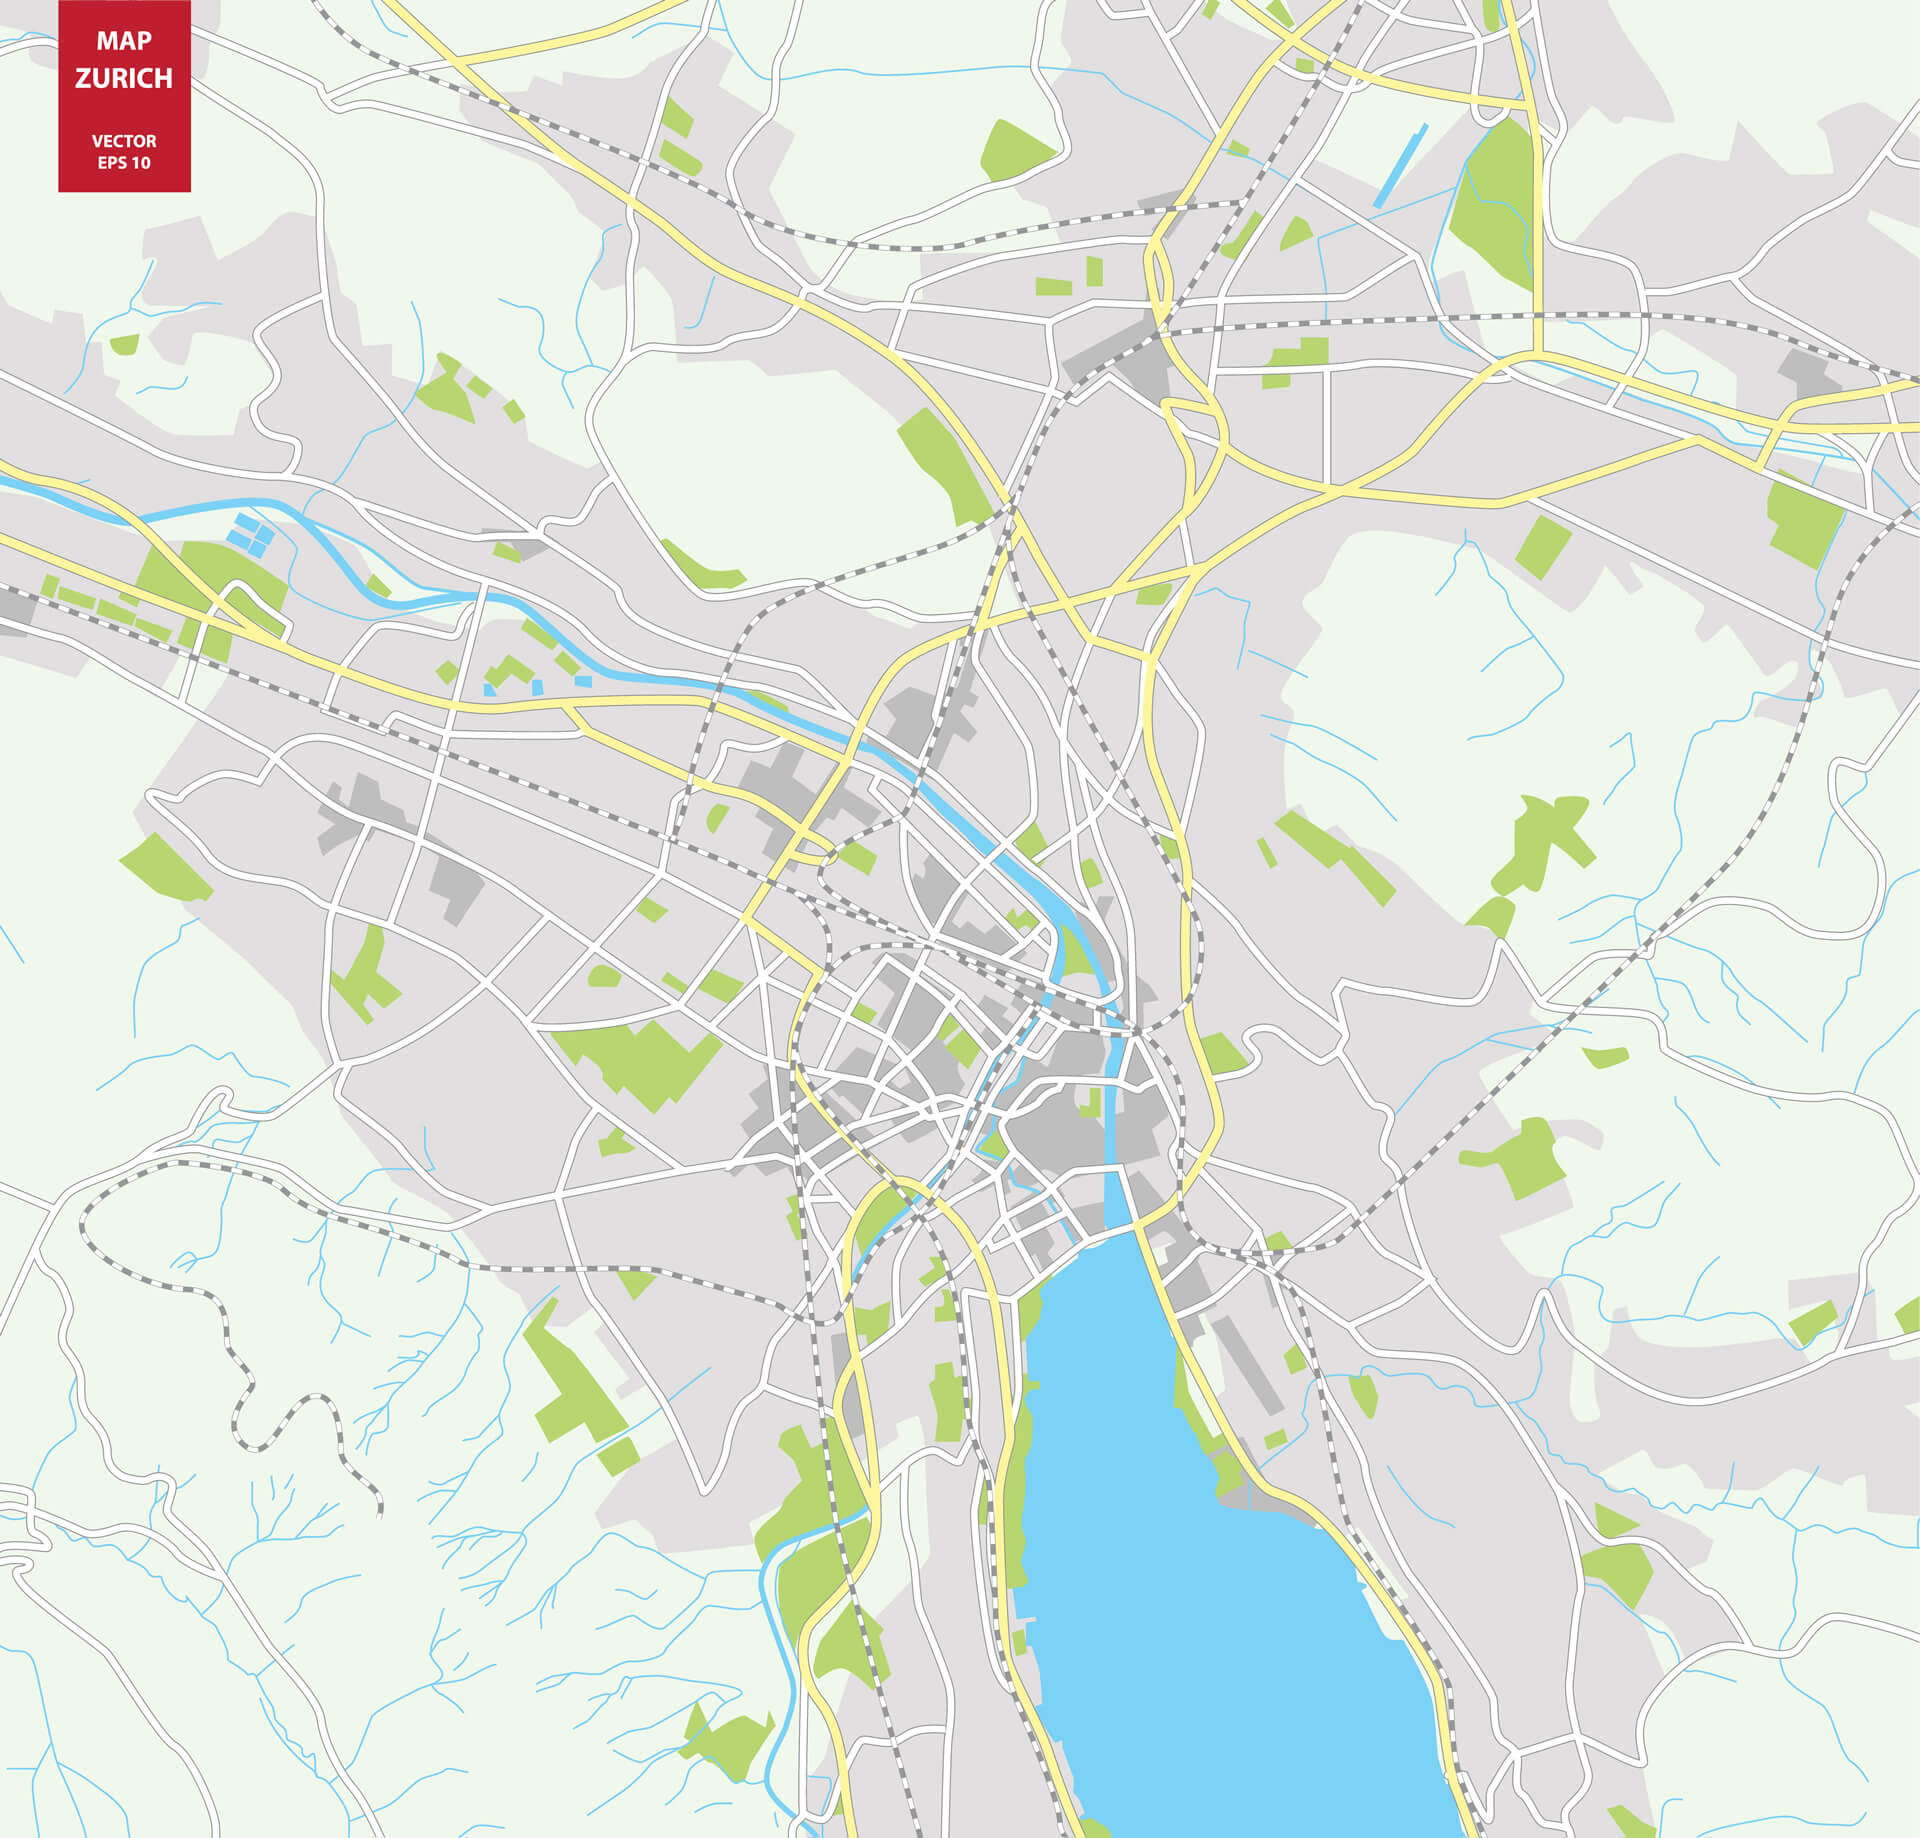 Plan de la ville de Zurich